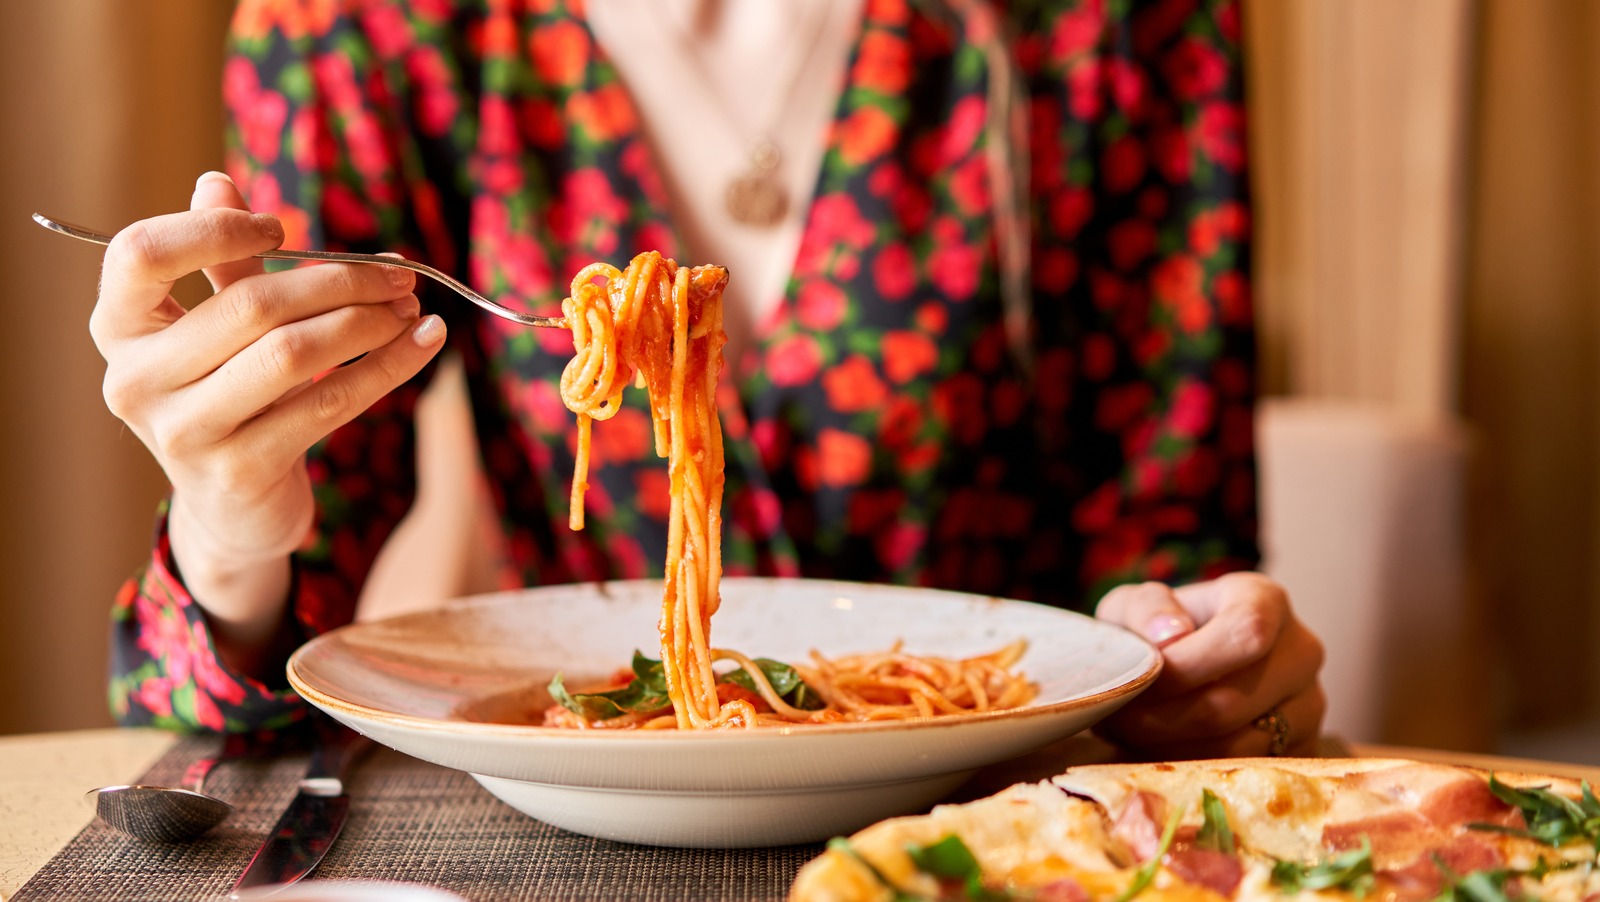 how-to-eat-spaghetti-the-italian-way